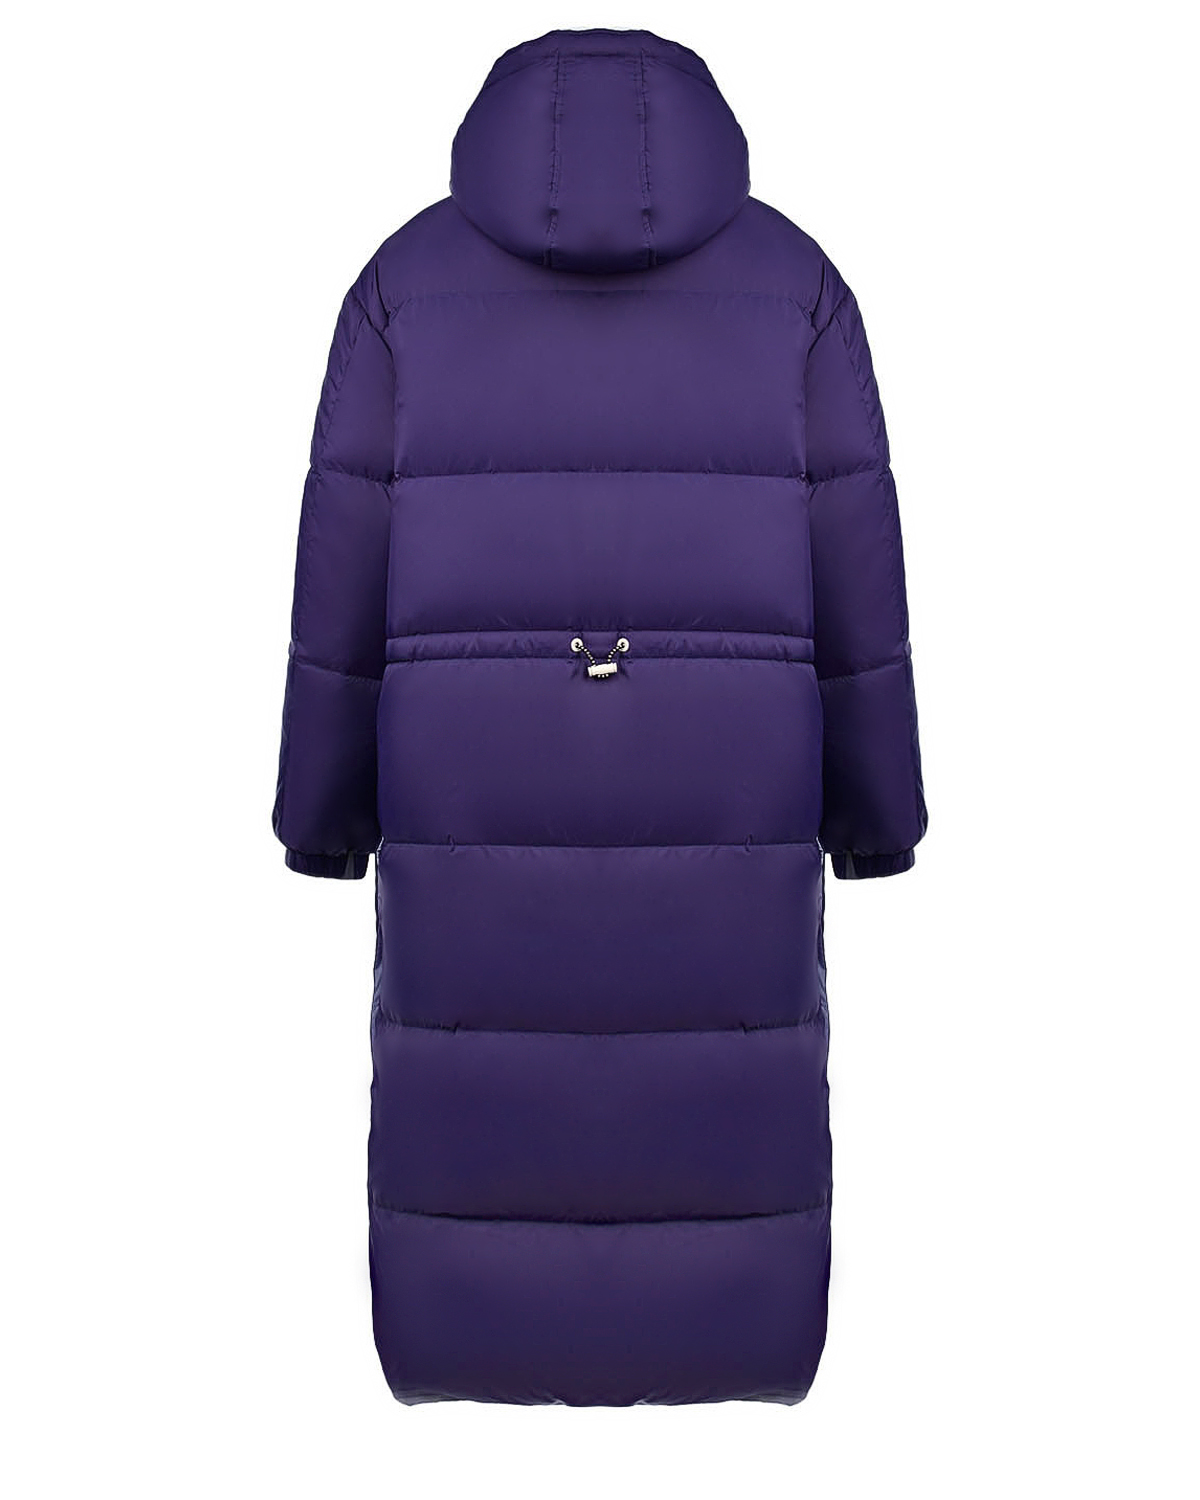 Двухстороннее пальто-пуховик, фиолетовый/сиреневый Yves Salomon, размер 38, цвет нет цвета Двухстороннее пальто-пуховик, фиолетовый/сиреневый Yves Salomon - фото 5